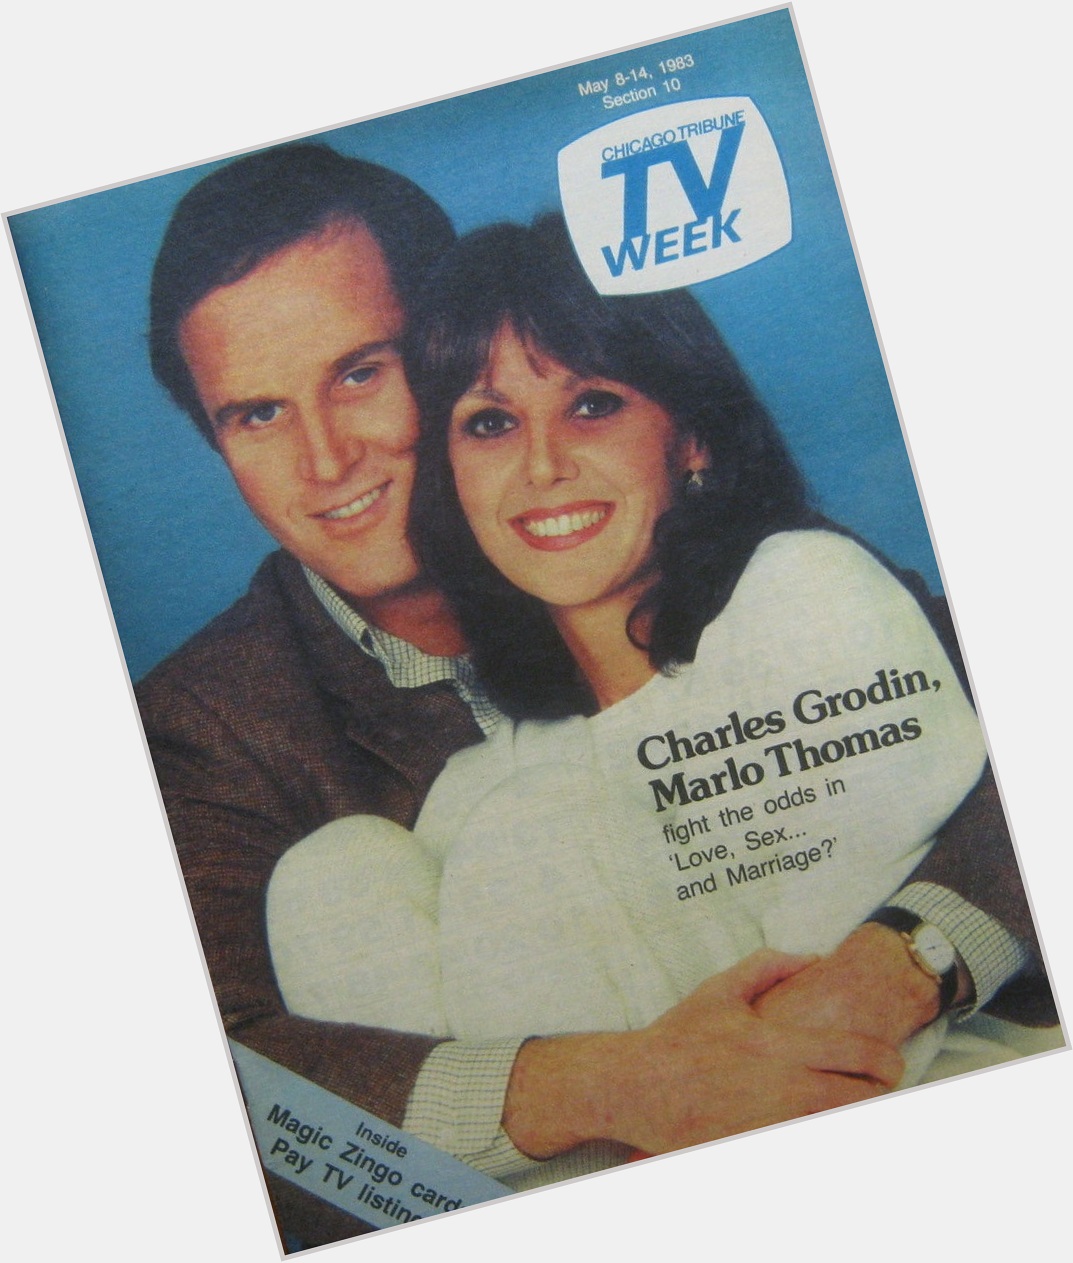 Happy Birthday to Charles Grodin,  born OTD in 1935
Chicago Tribune TV Week.  May 8-14, 1983 